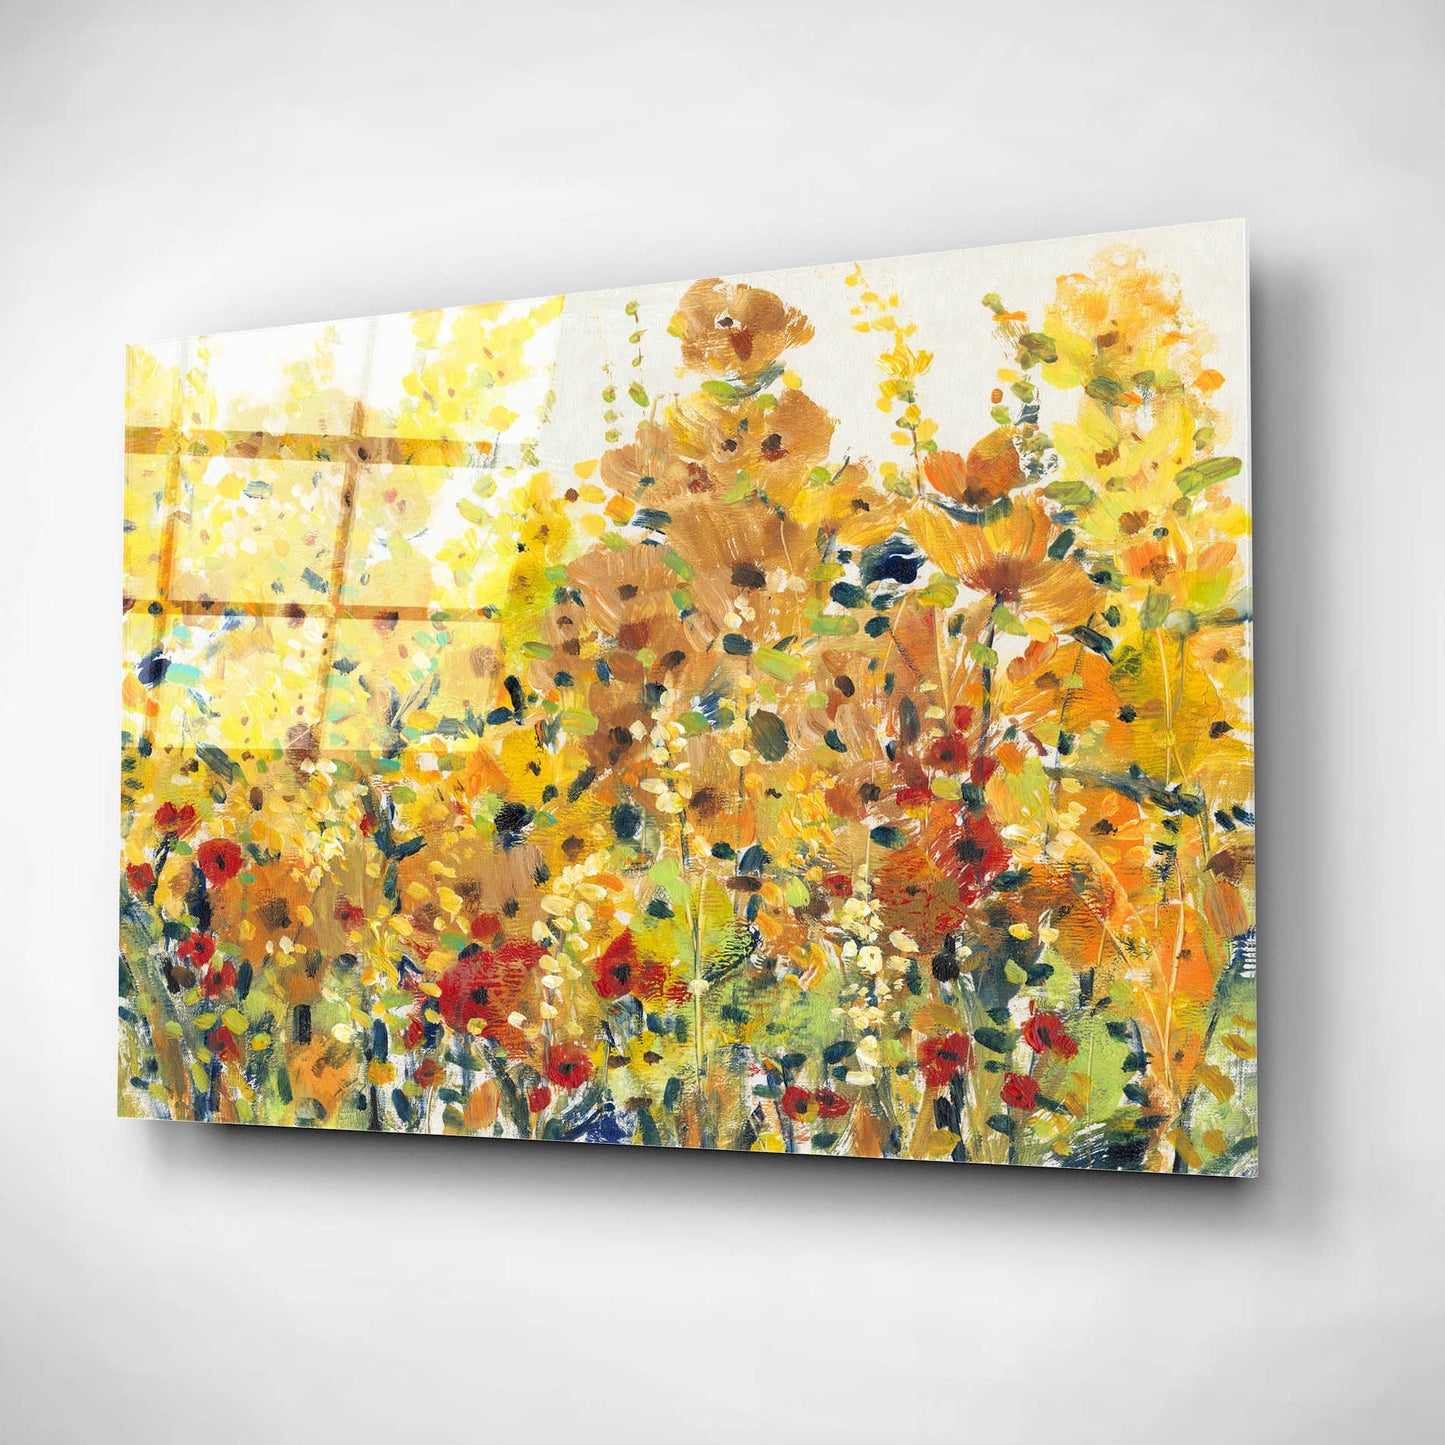 Epic Art 'Golden Summer Garden I' by Tim O'Toole, Acrylic Glass Wall Art,16x12